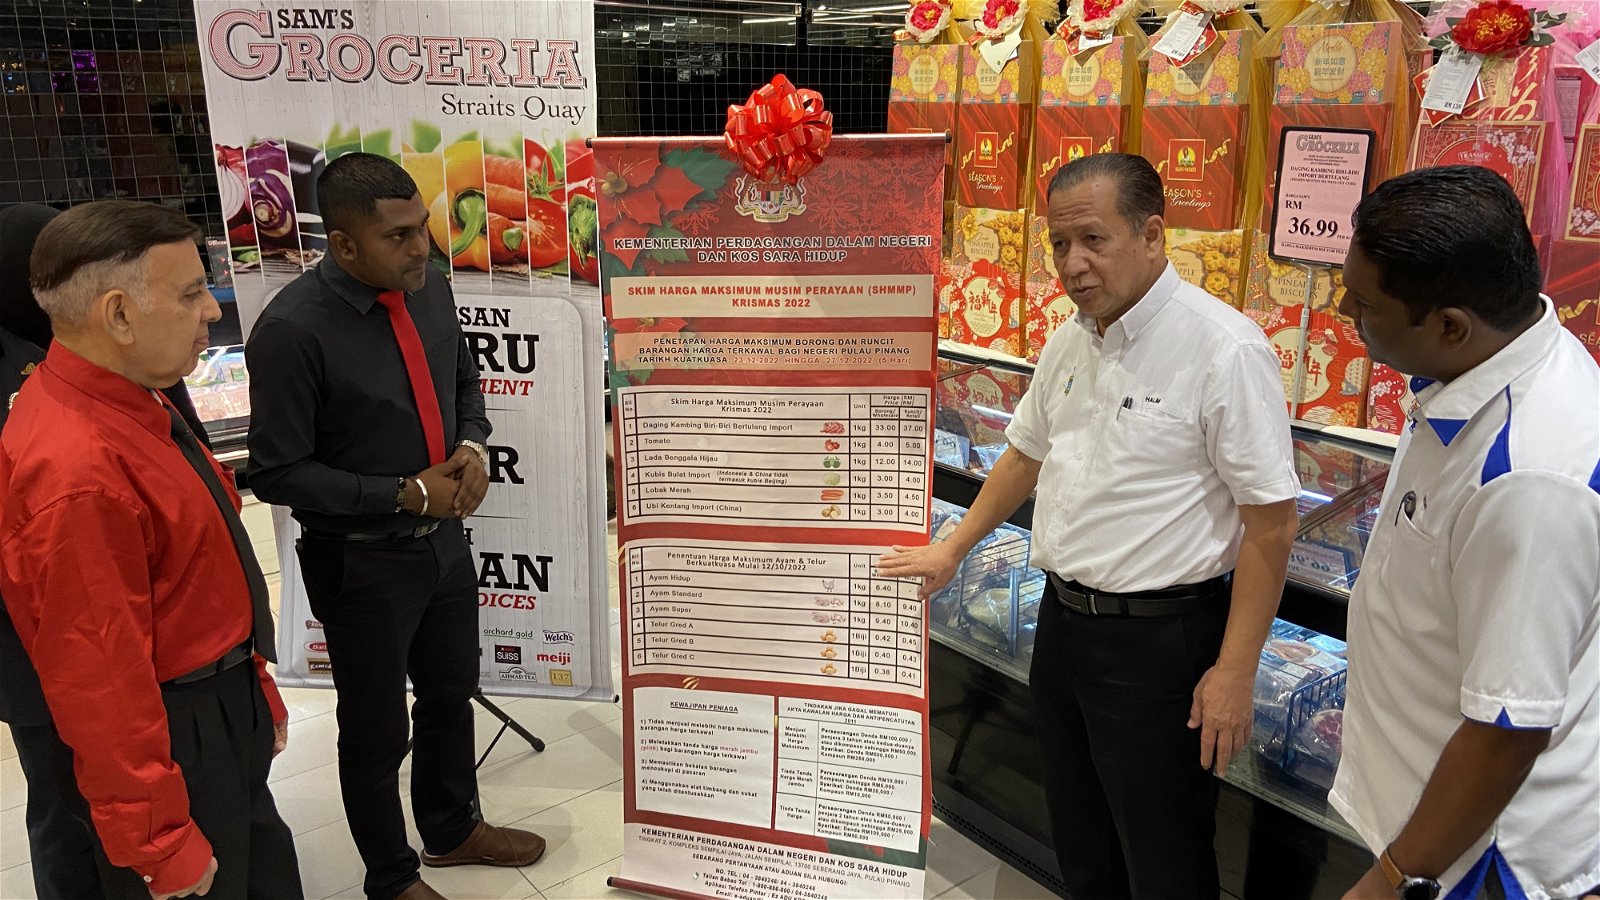 槟州国内贸易与生活成本局周一早上前往Sam Groceria巡视圣诞节统制品。